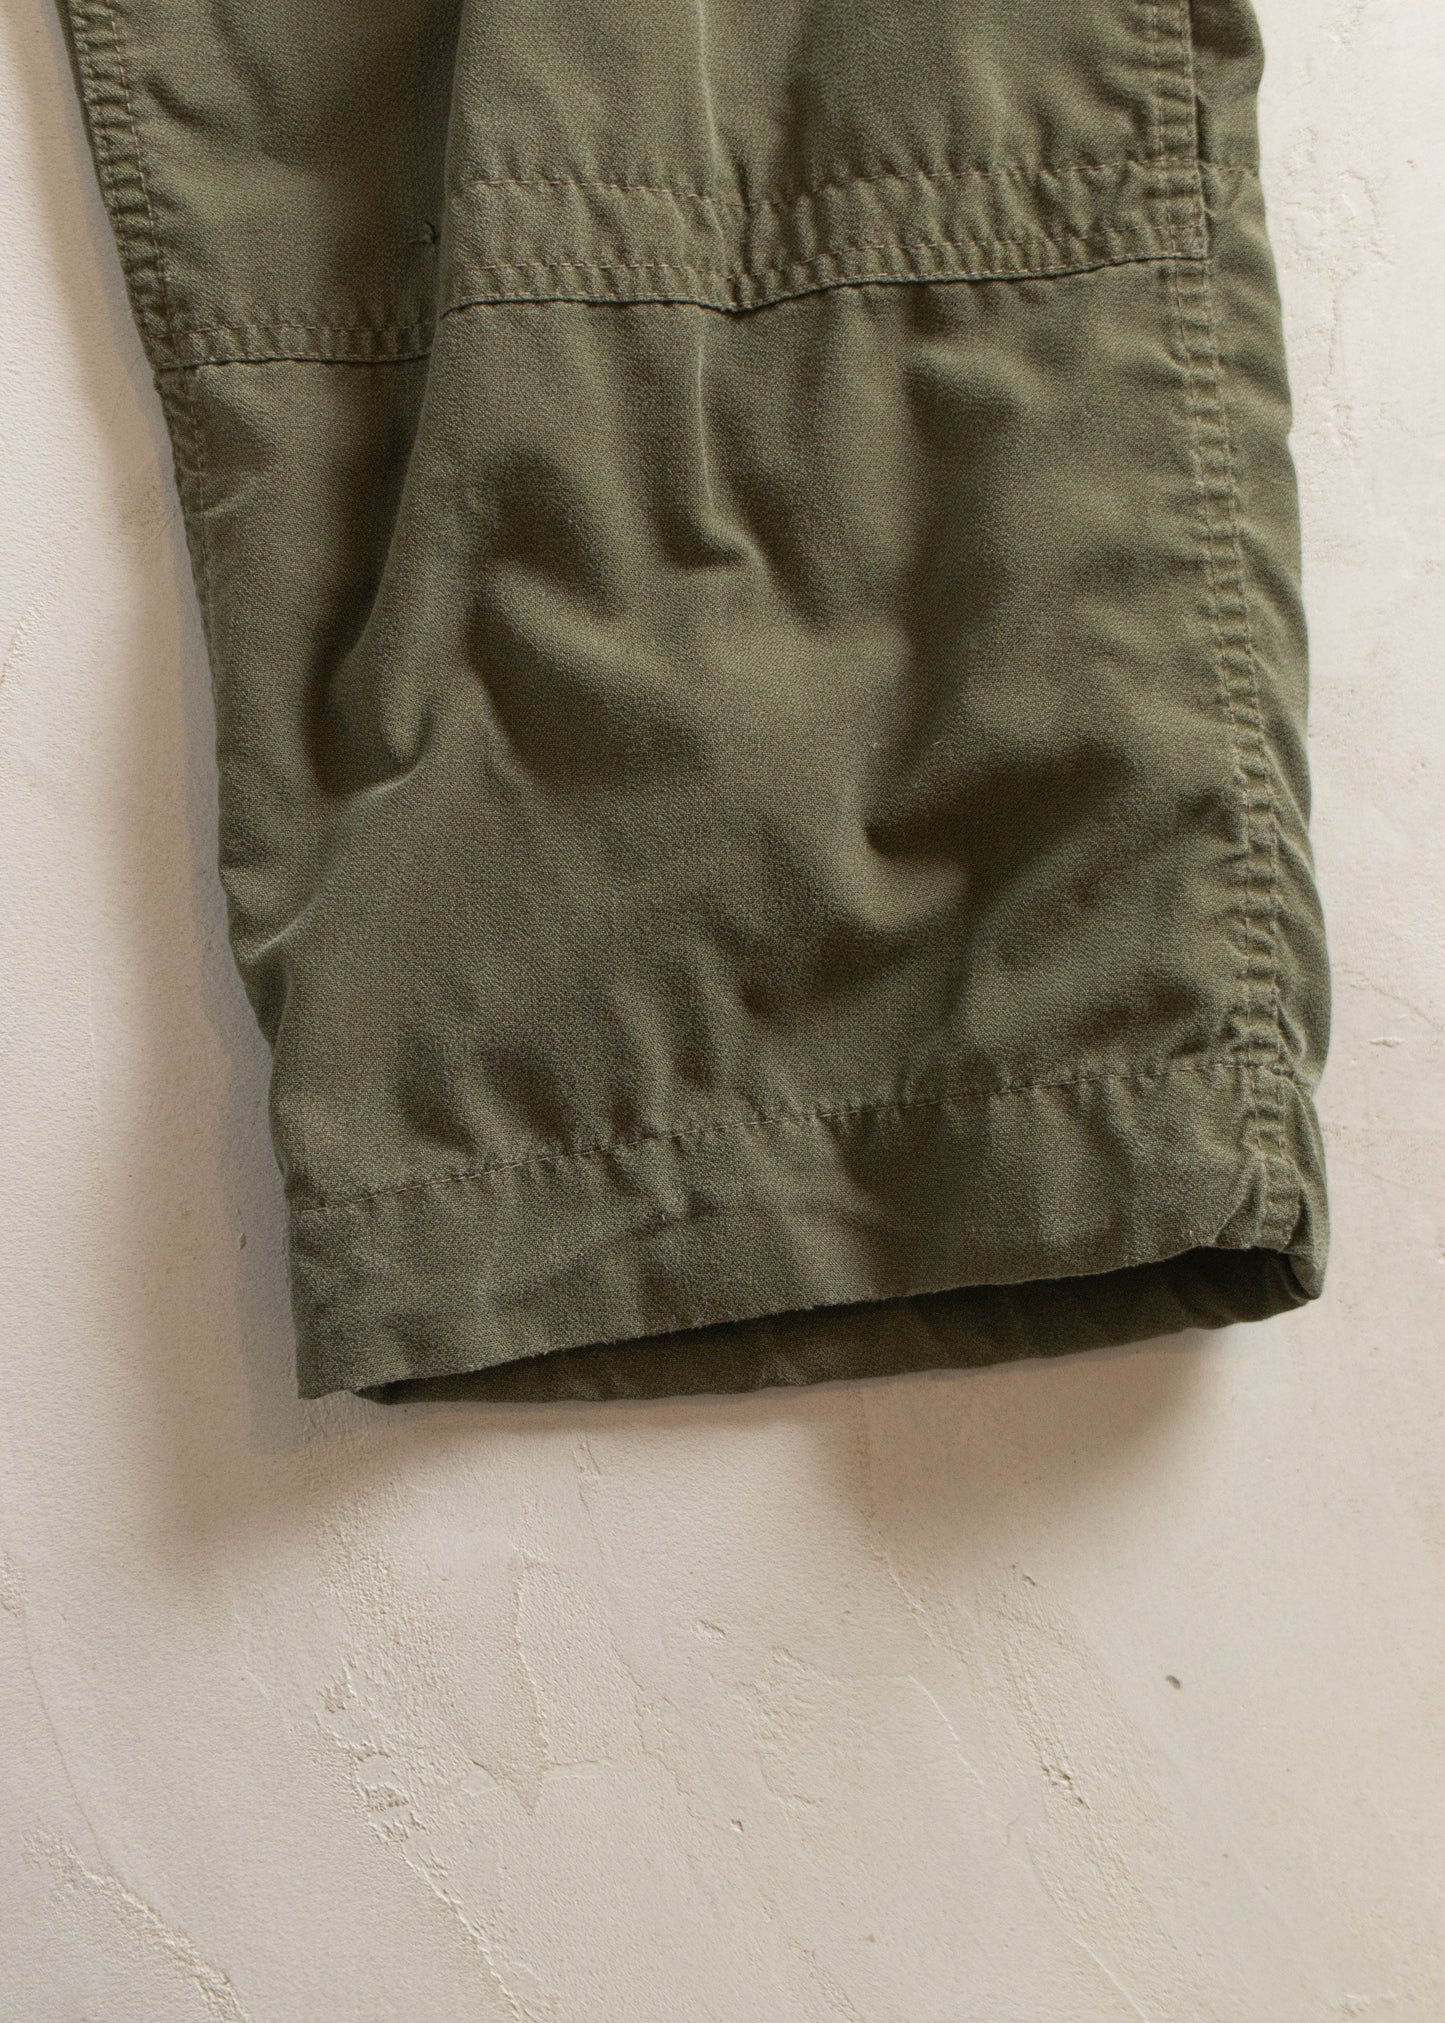 1980s MKIII Military Combat Cargo Pants Size Women's 34 Men's 36